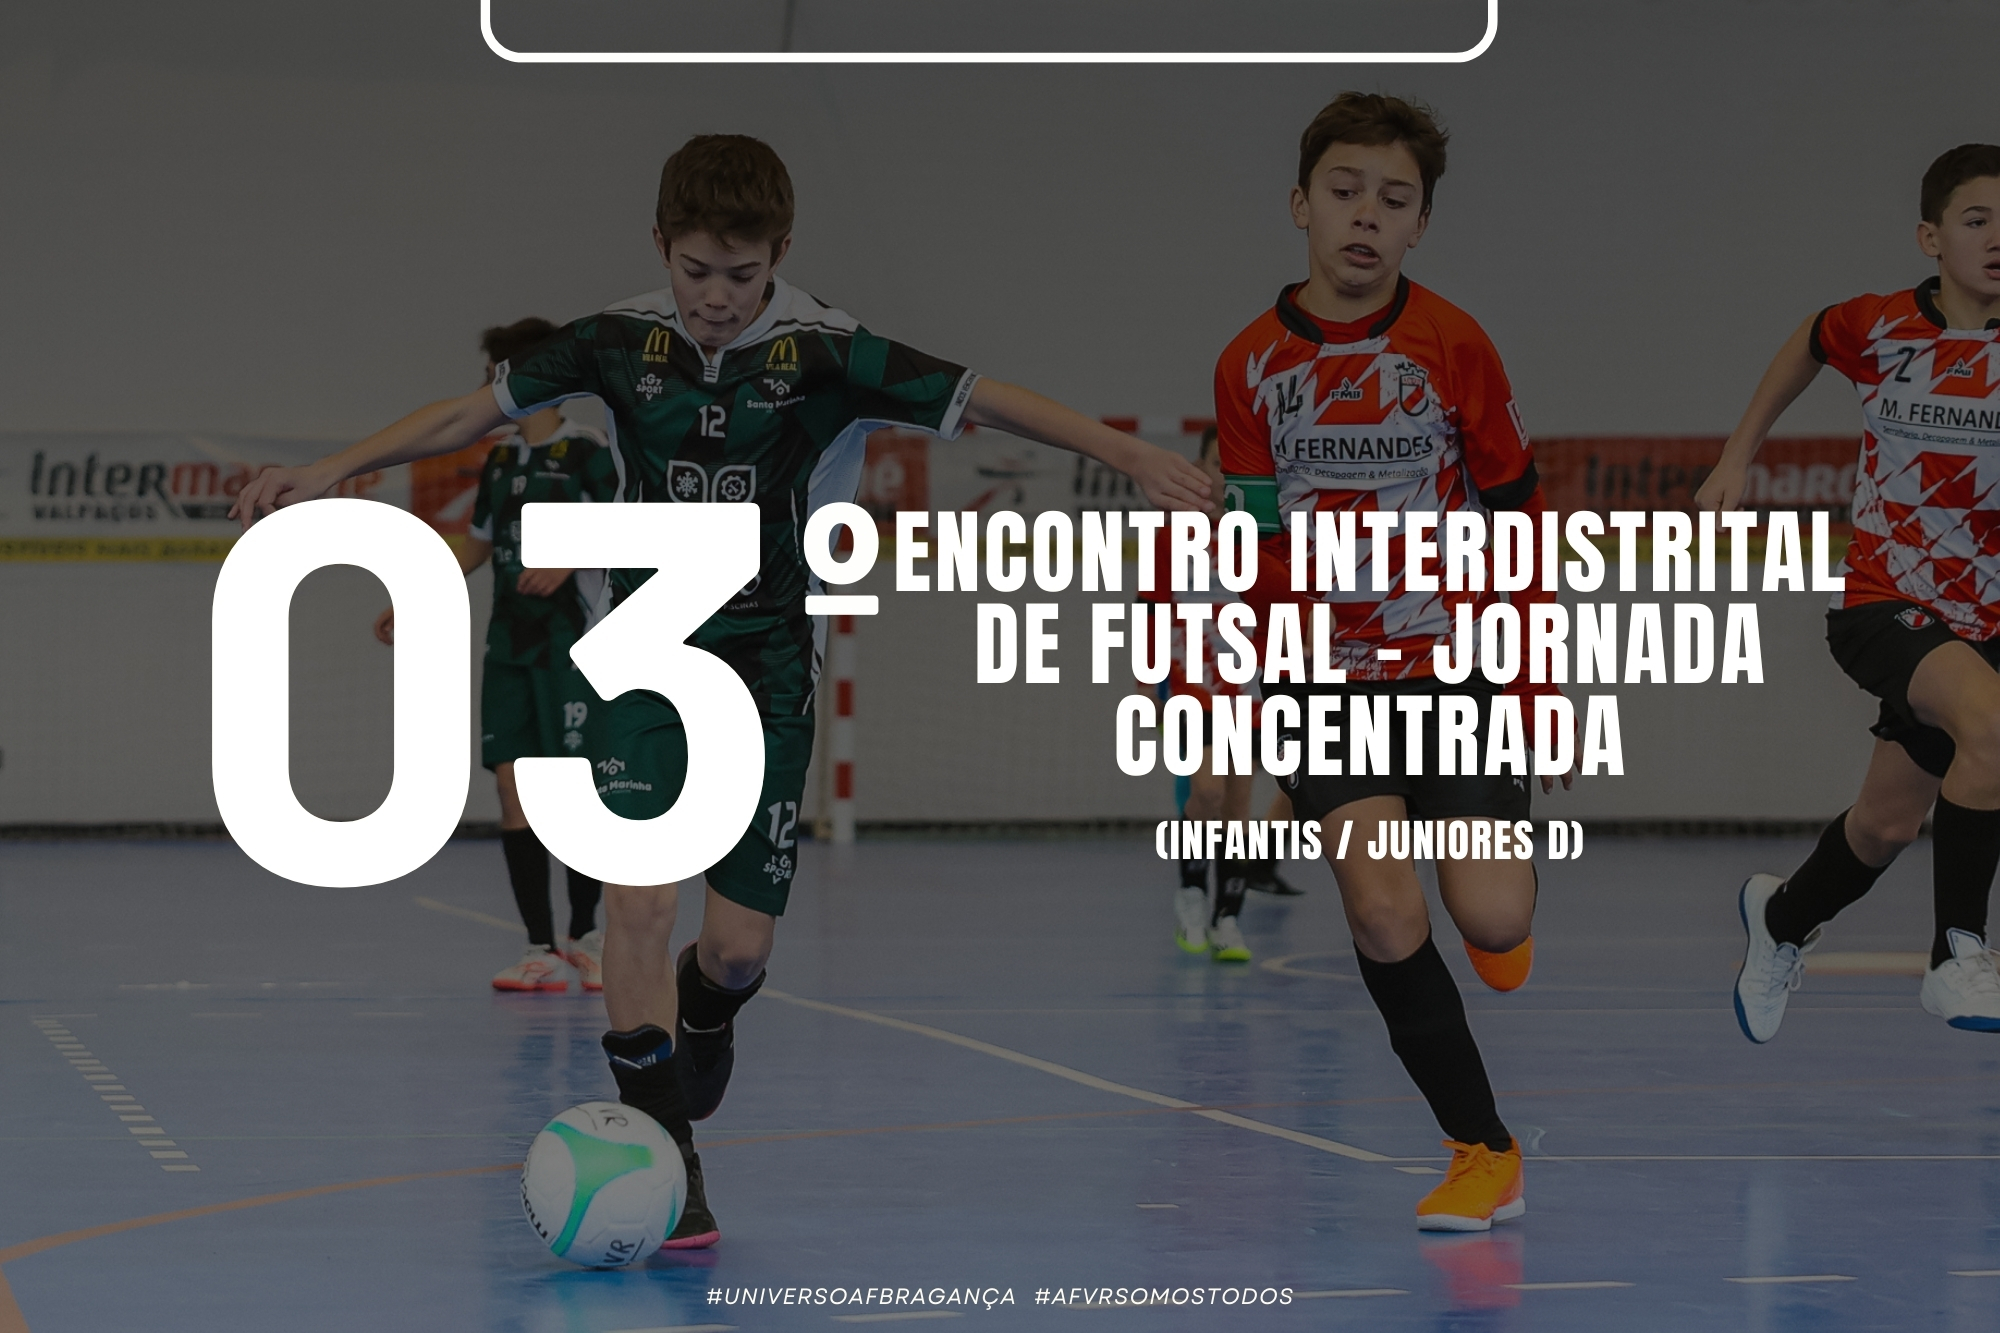 AF Bragança e AF Vila Real promovem Encontro Interdistrital de Futsal em Infantis